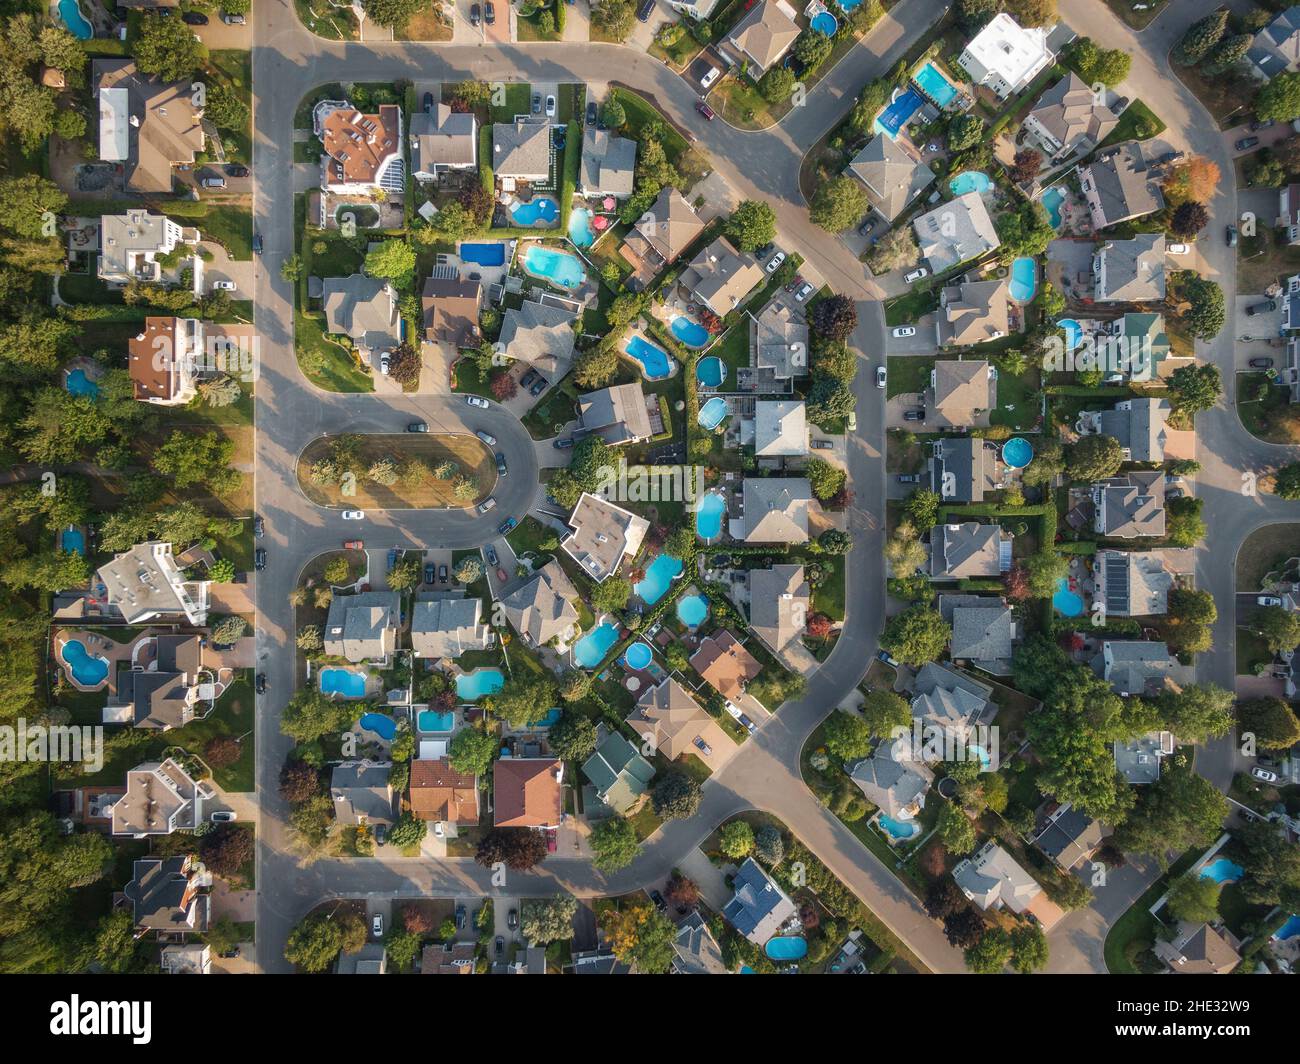 Vista aerea dall'alto verso il basso delle case e delle strade nel quartiere residenziale di Montreal, Quebec, Canada. Concetto di proprietà, case e immobili. Foto Stock